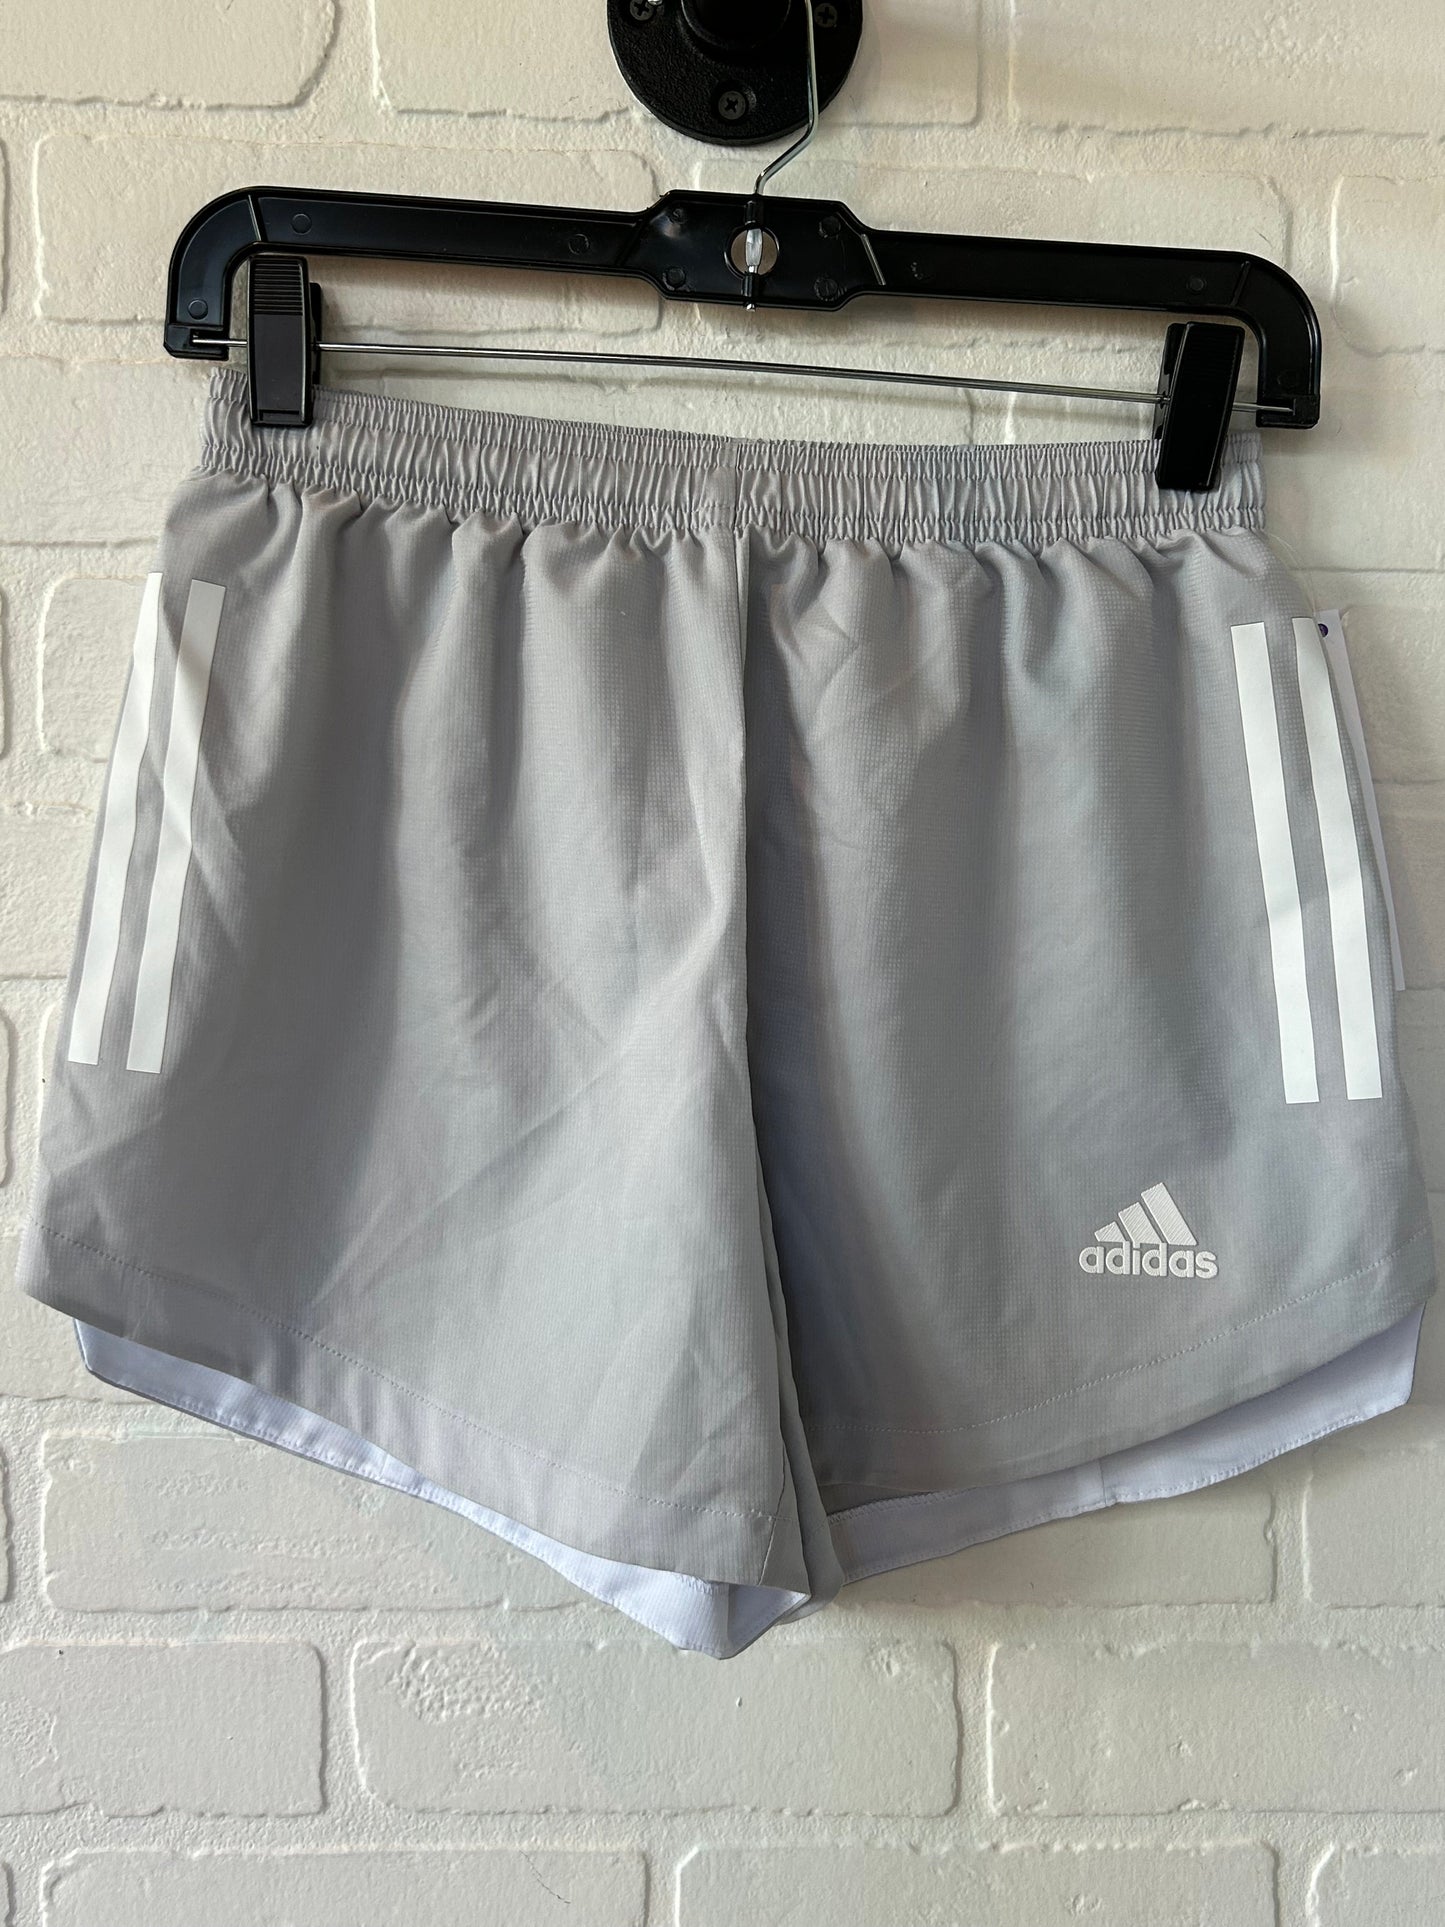 Grey & White Athletic Shorts Adidas, Size 4